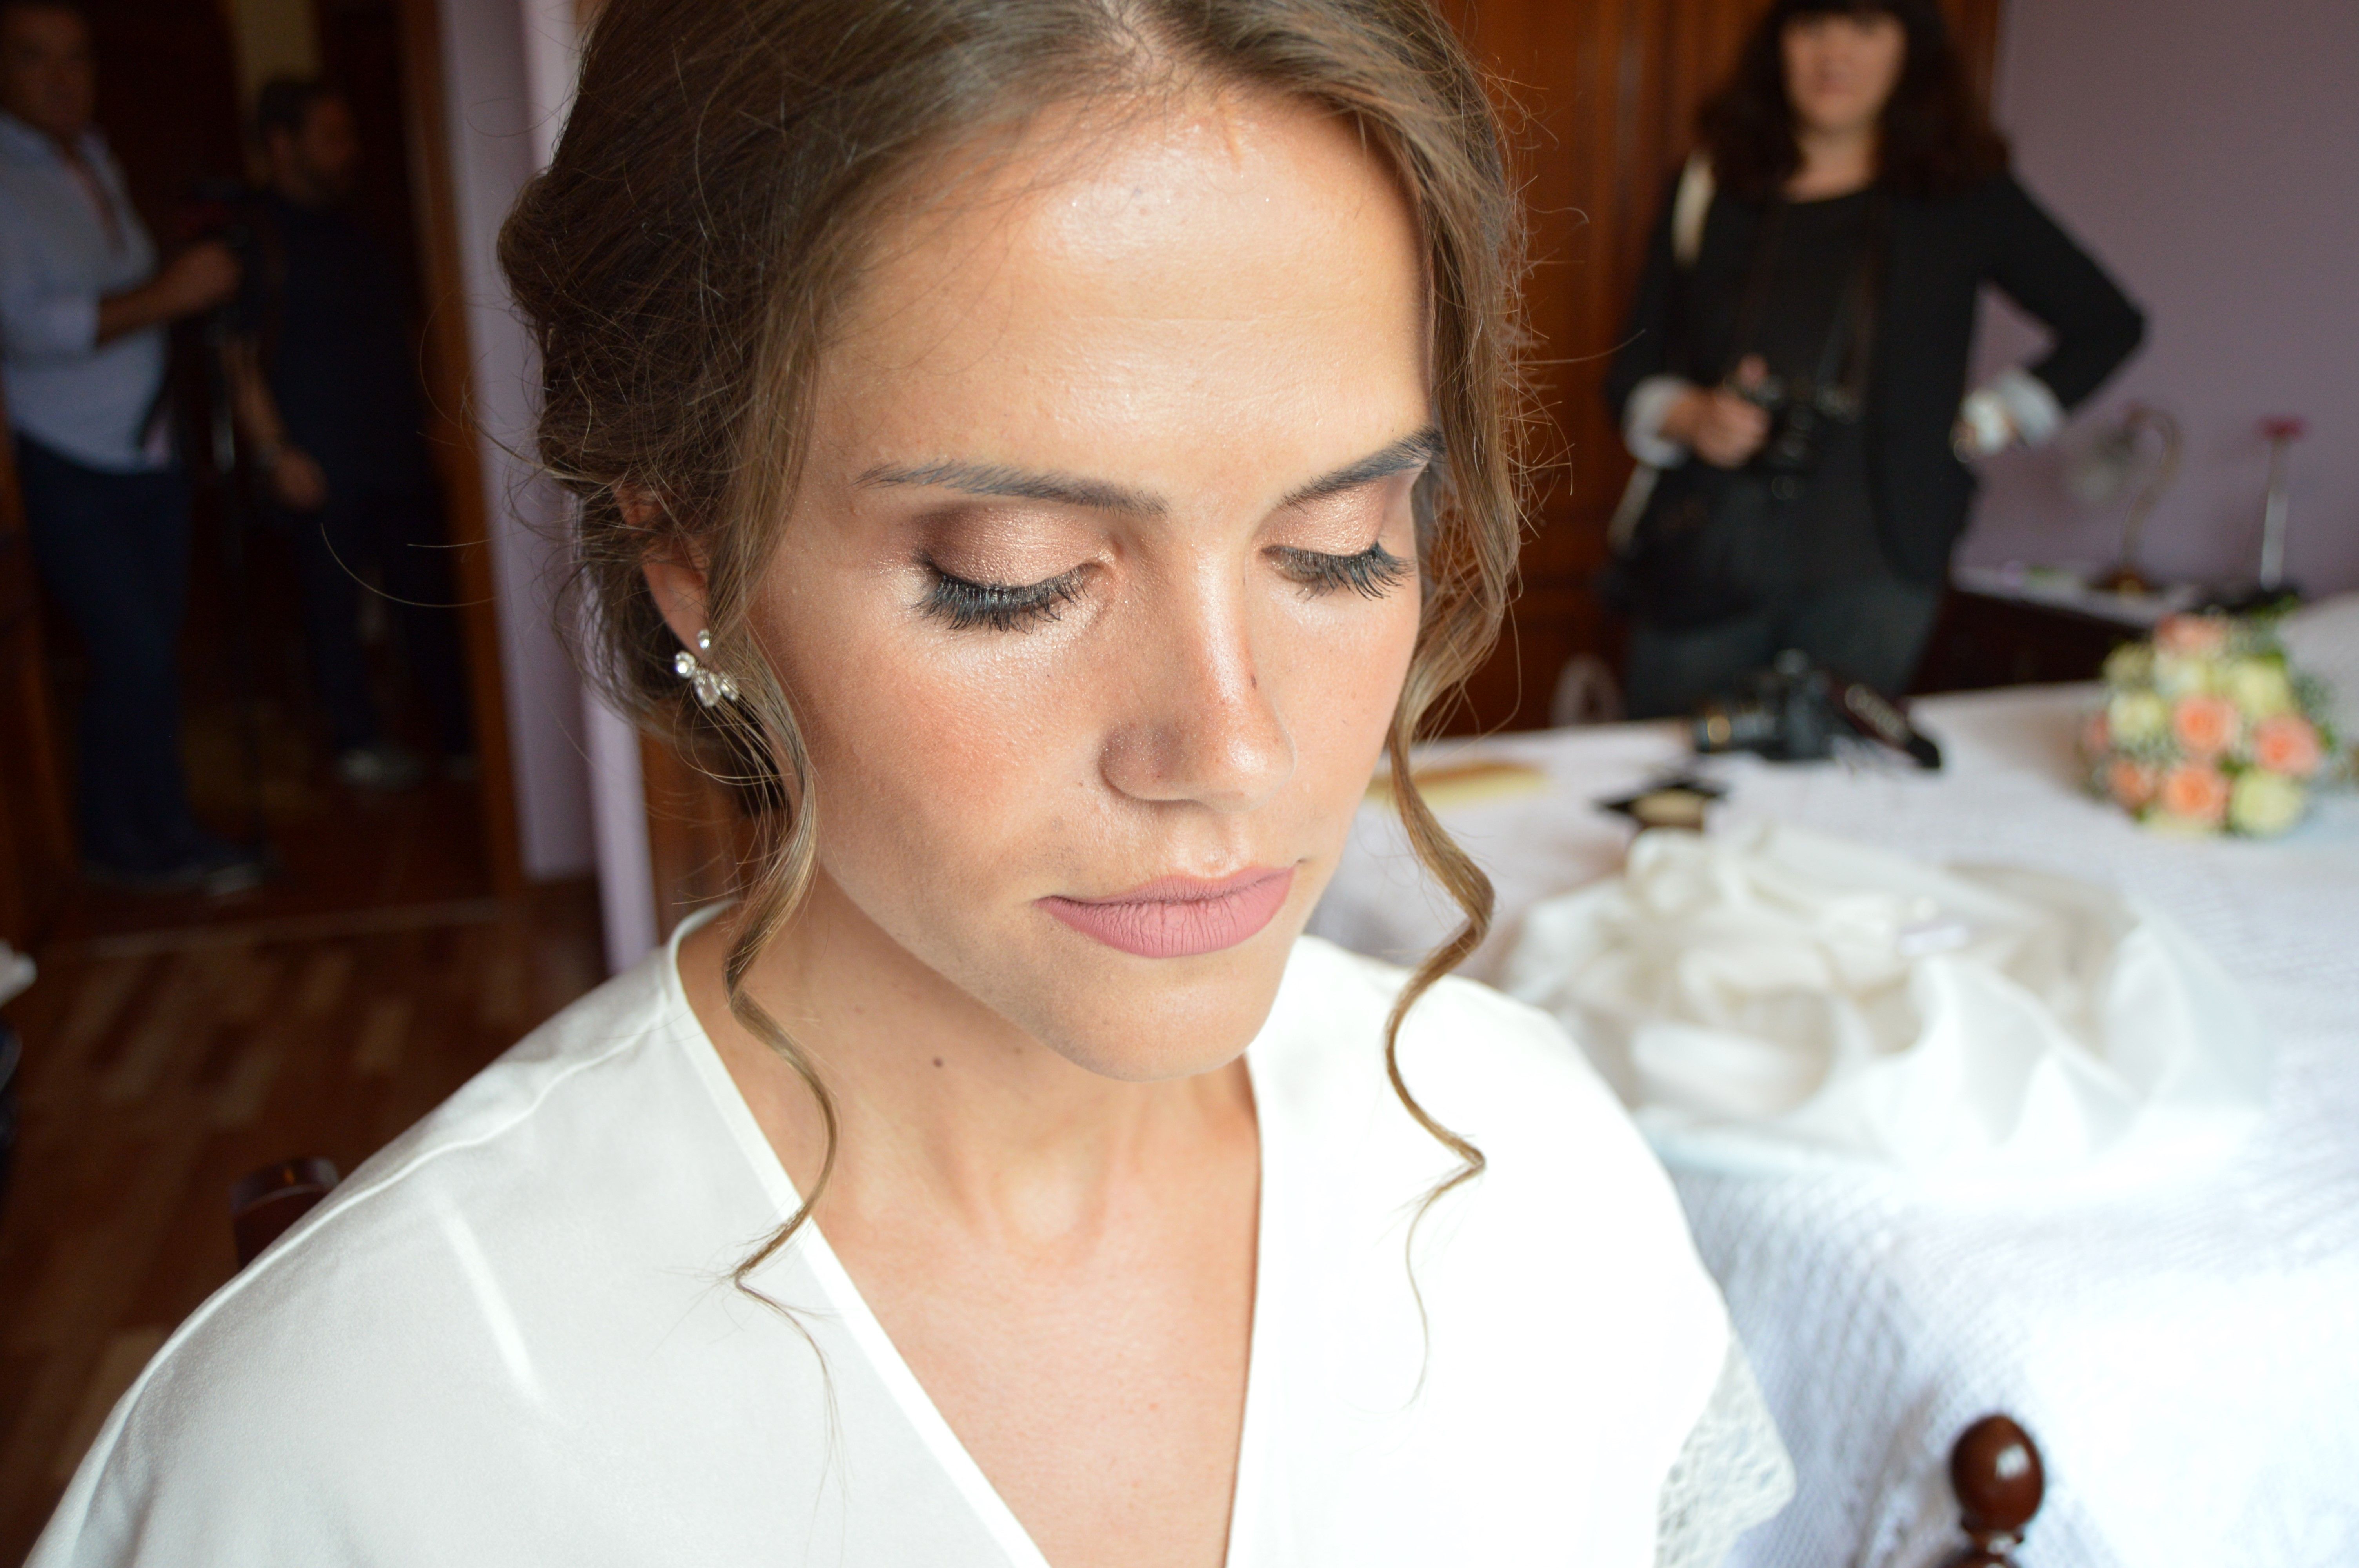 Vânia Coelho – Makeup & Beauty